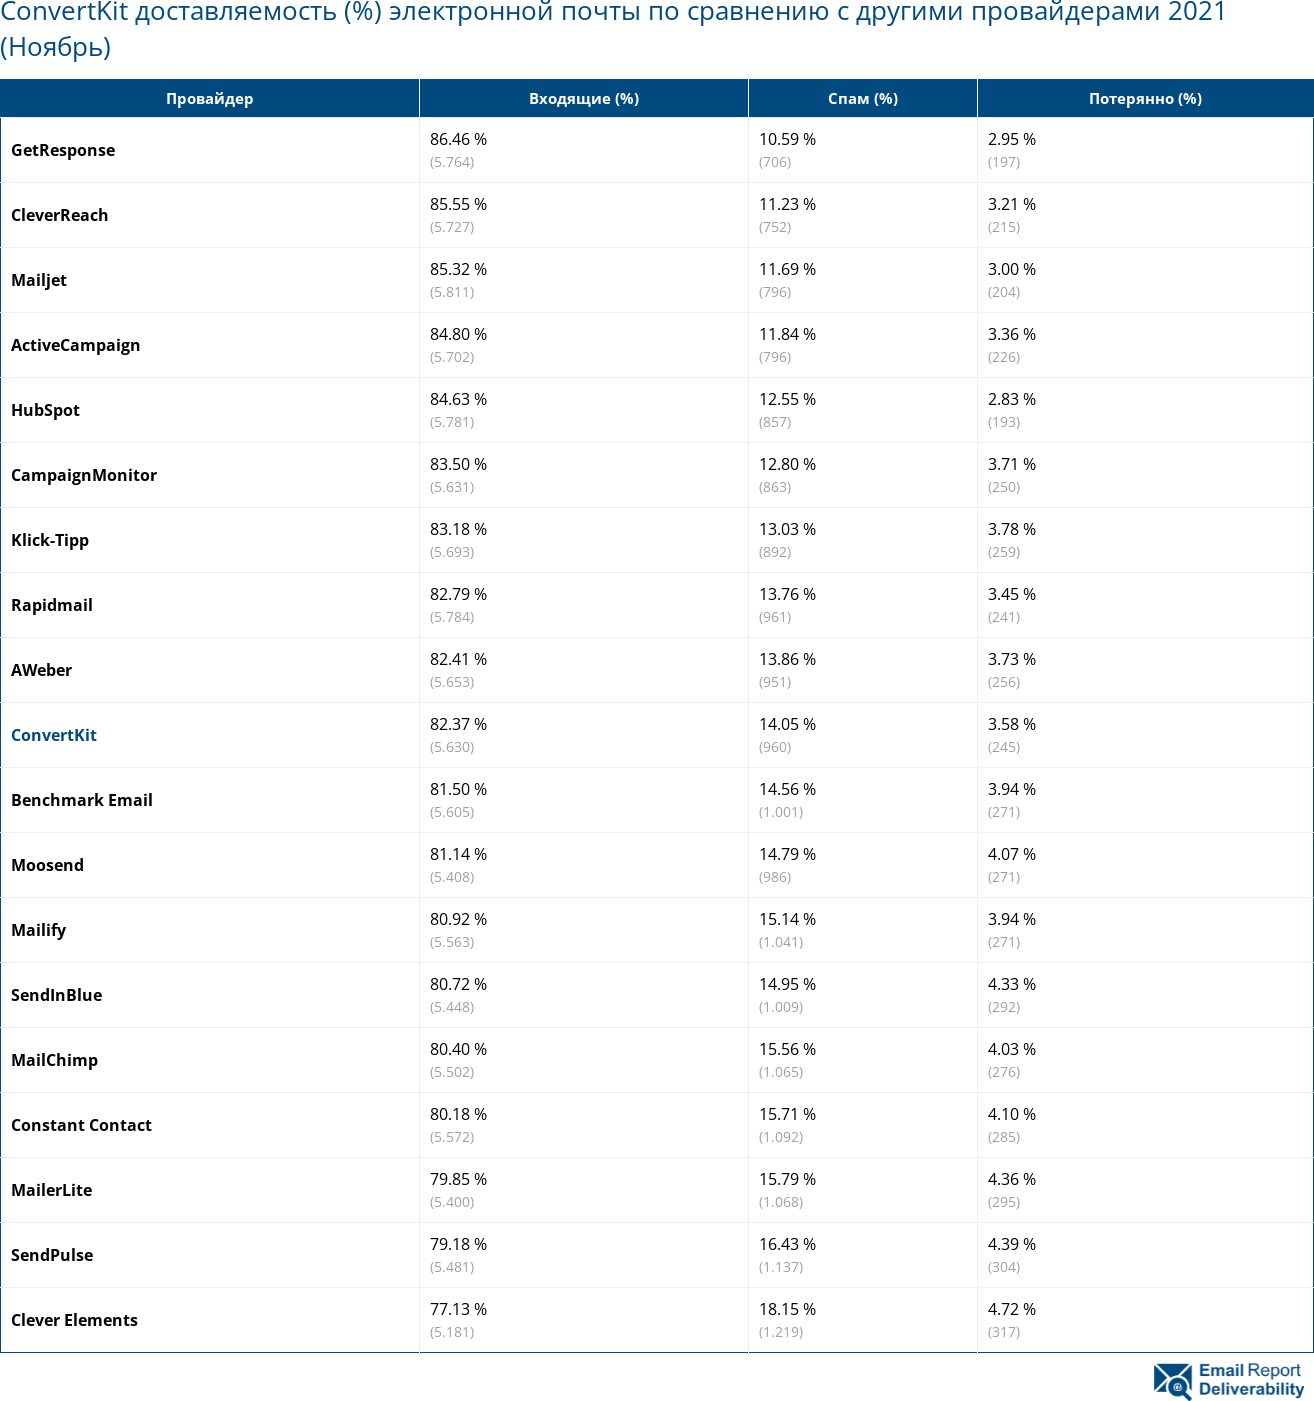 ConvertKit доставляемость (%) электронной почты по сравнению с другими провайдерами 2021 (Ноябрь)